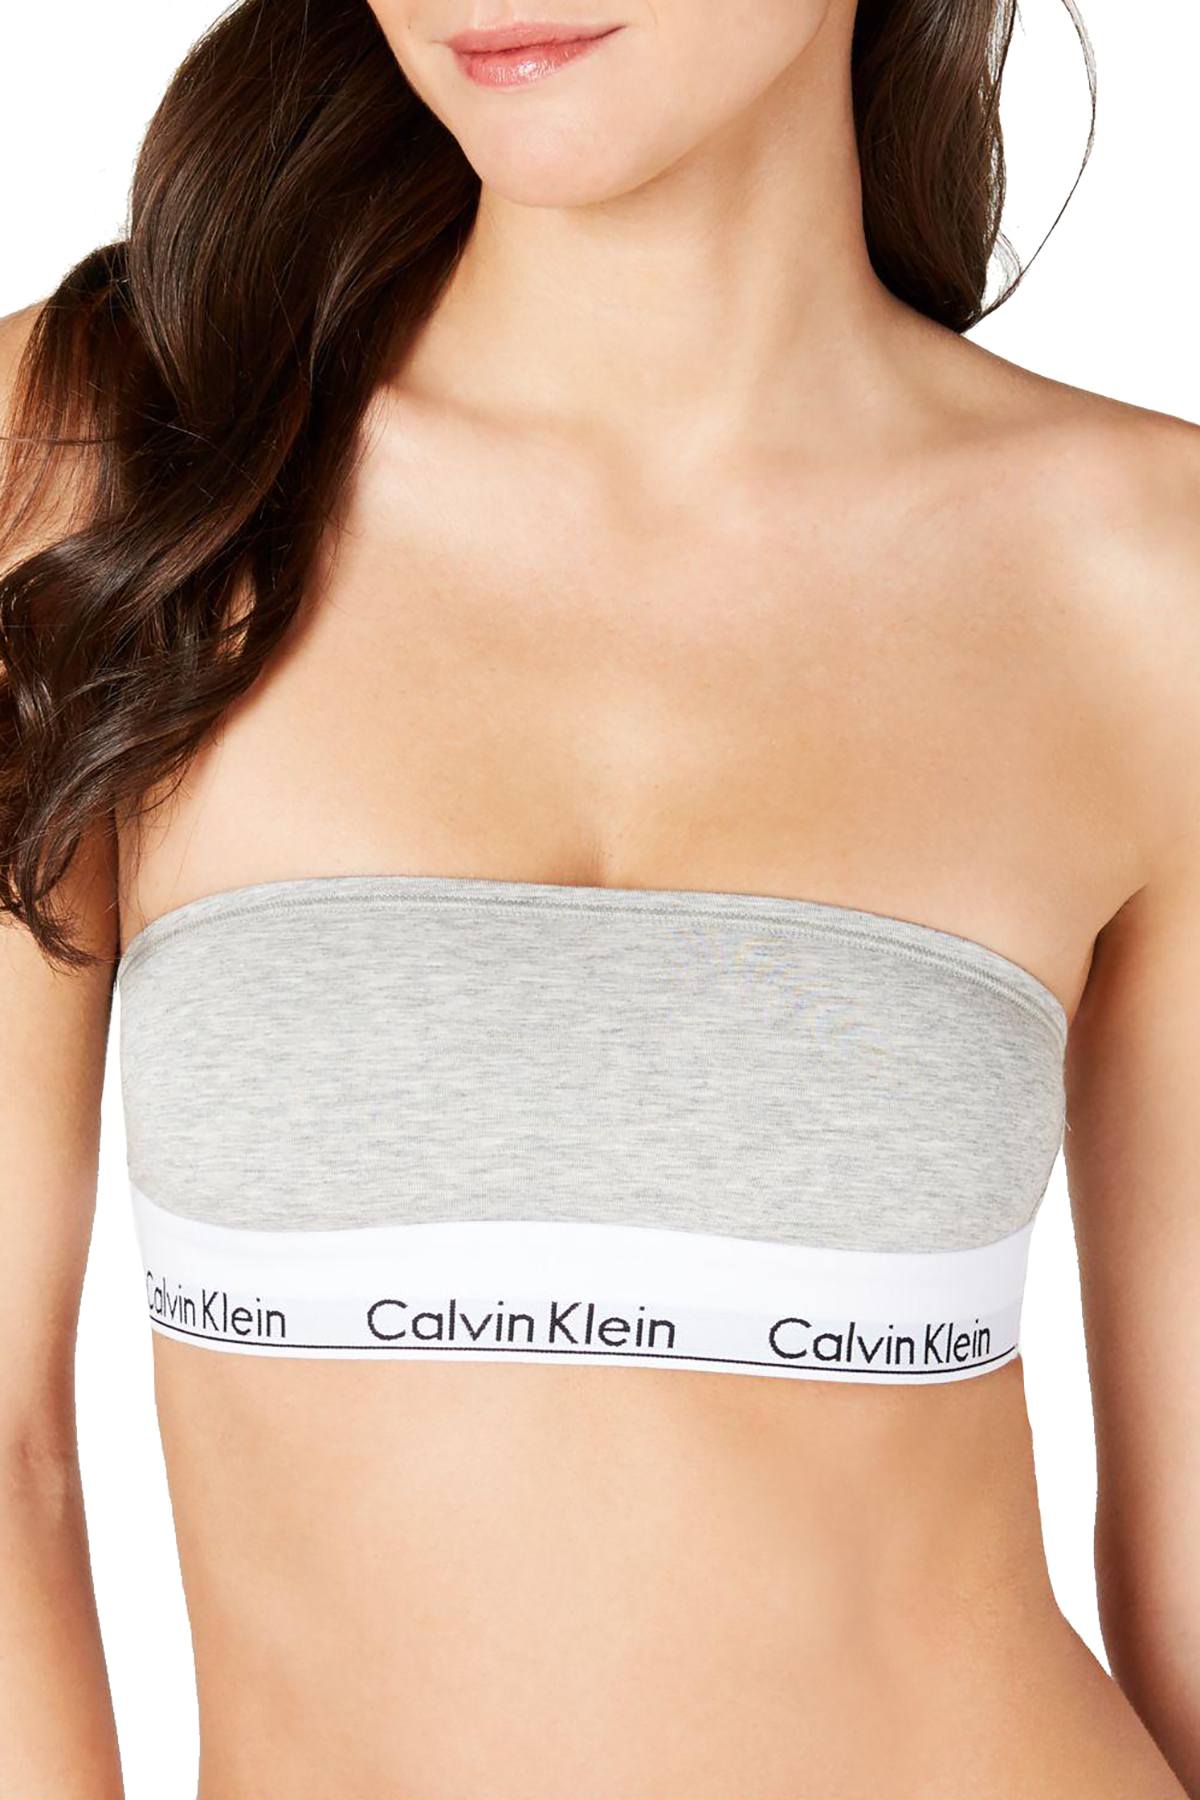 Calvin Klein - MODERN COTTON BRALETTE UNLINED in Grey Heather